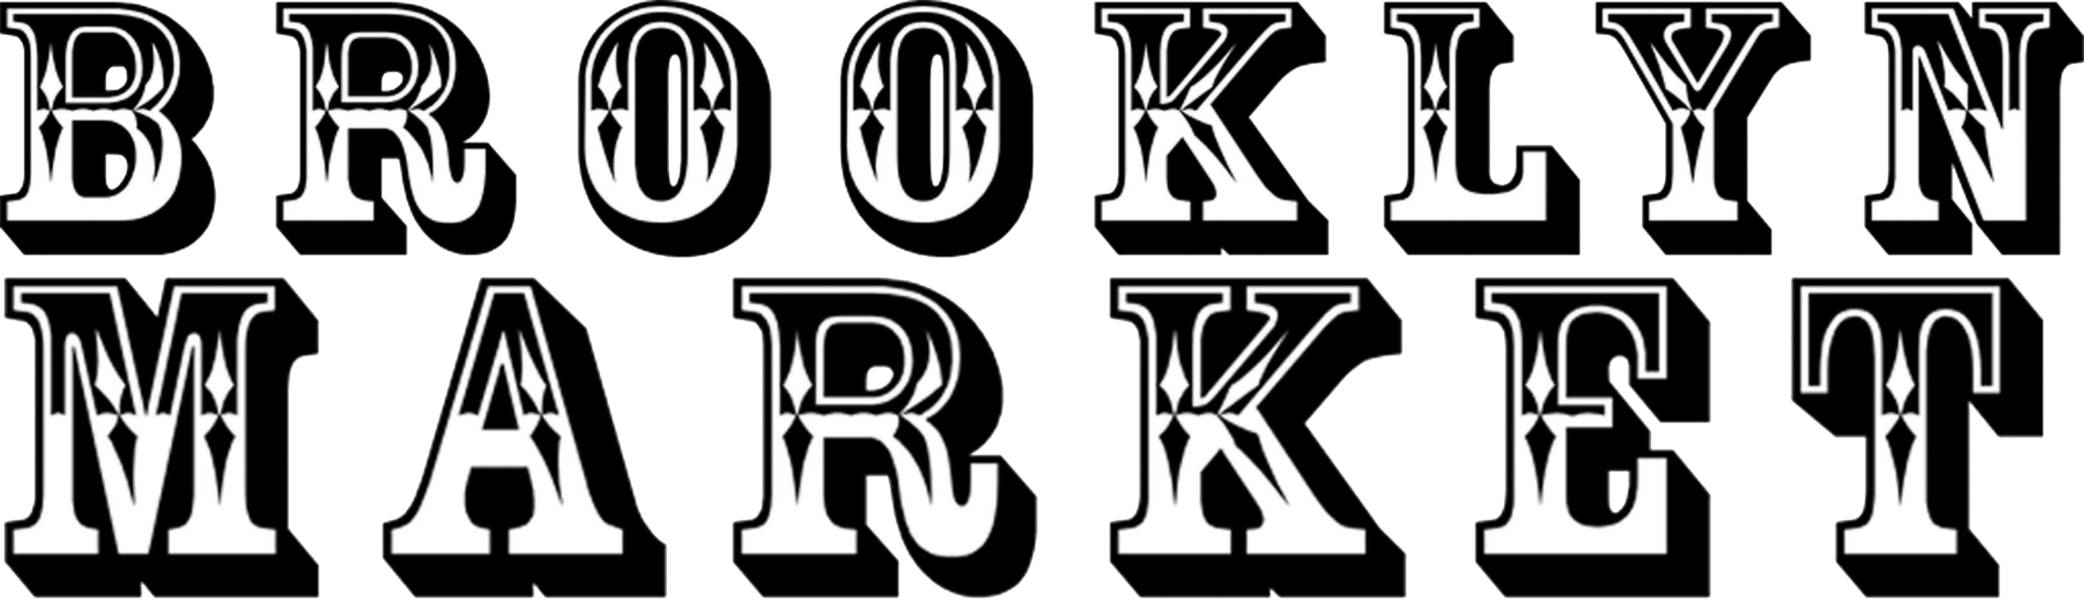 Brooklyn Market logo